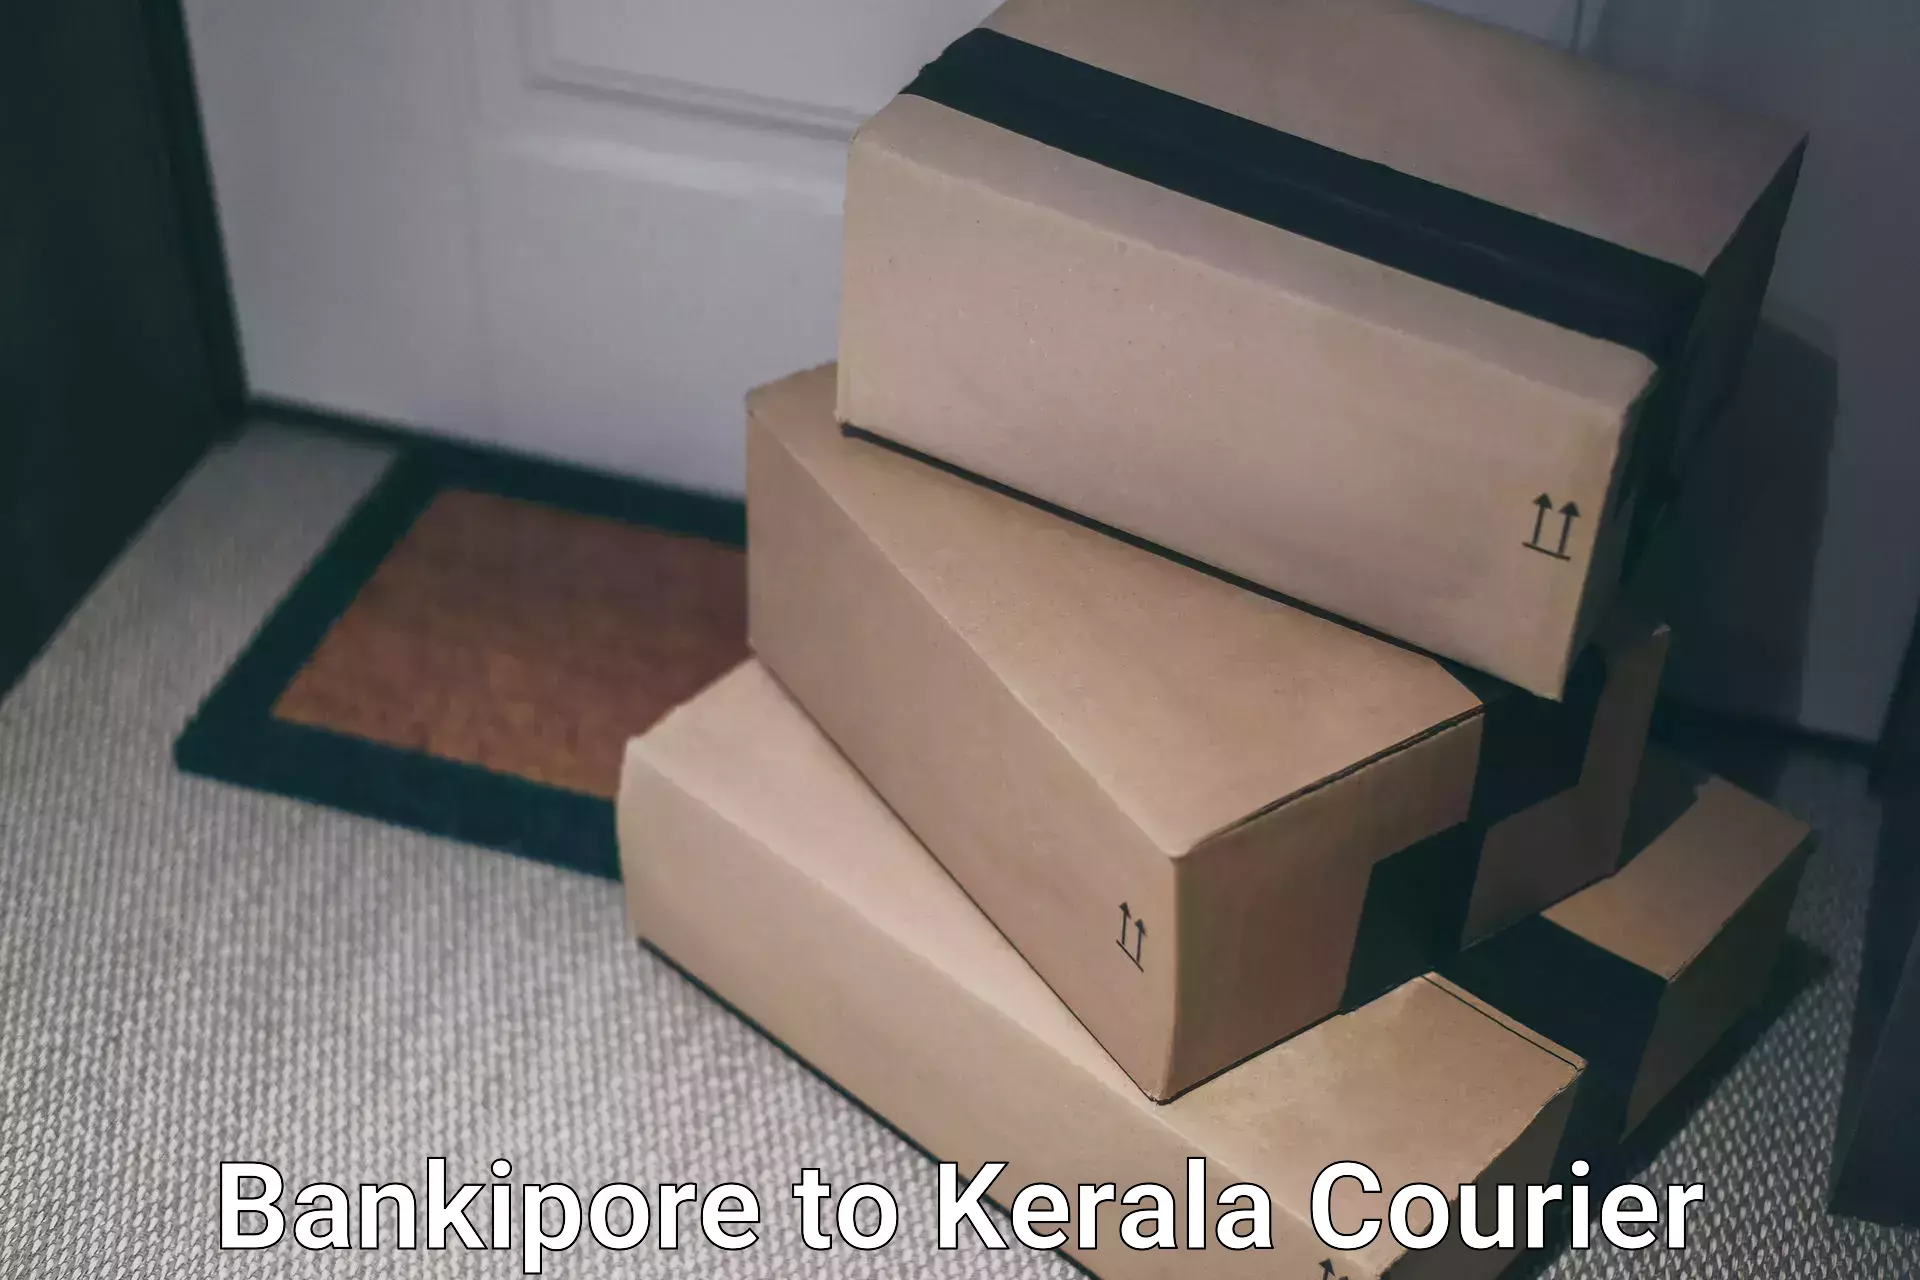 24/7 courier service Bankipore to Kerala